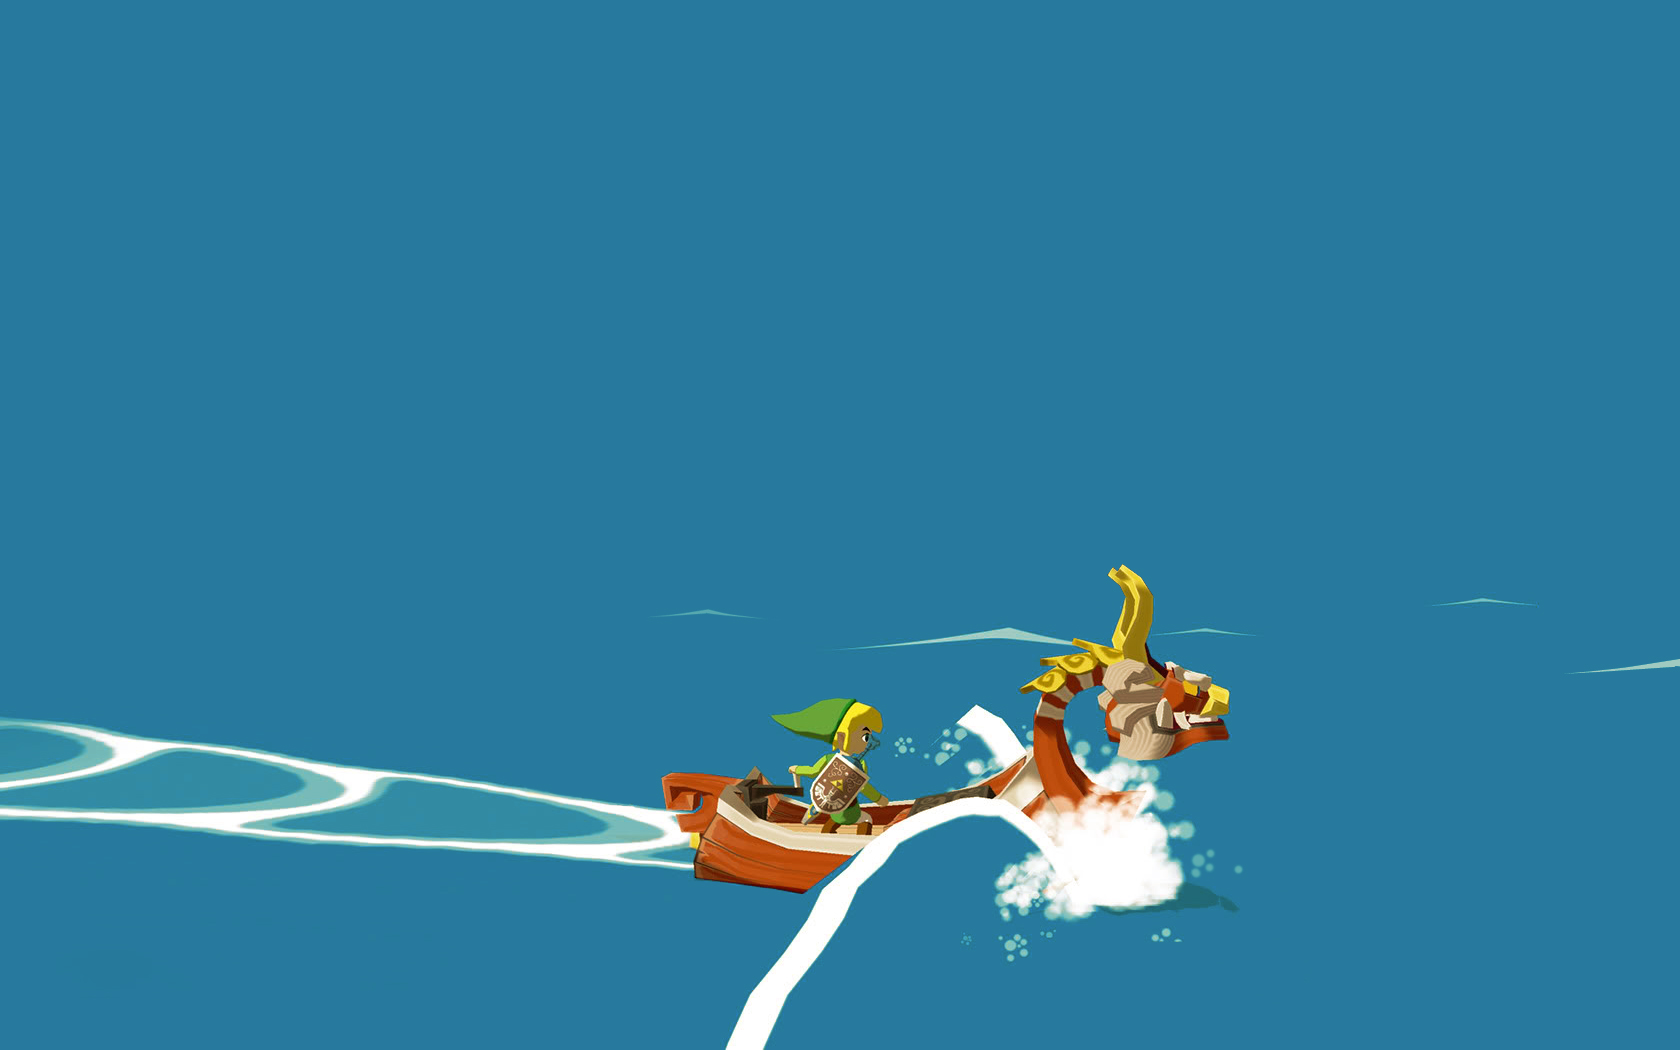 1001 Videojuegos que debes jugar: The Legend of Zelda - The Wind Waker 2